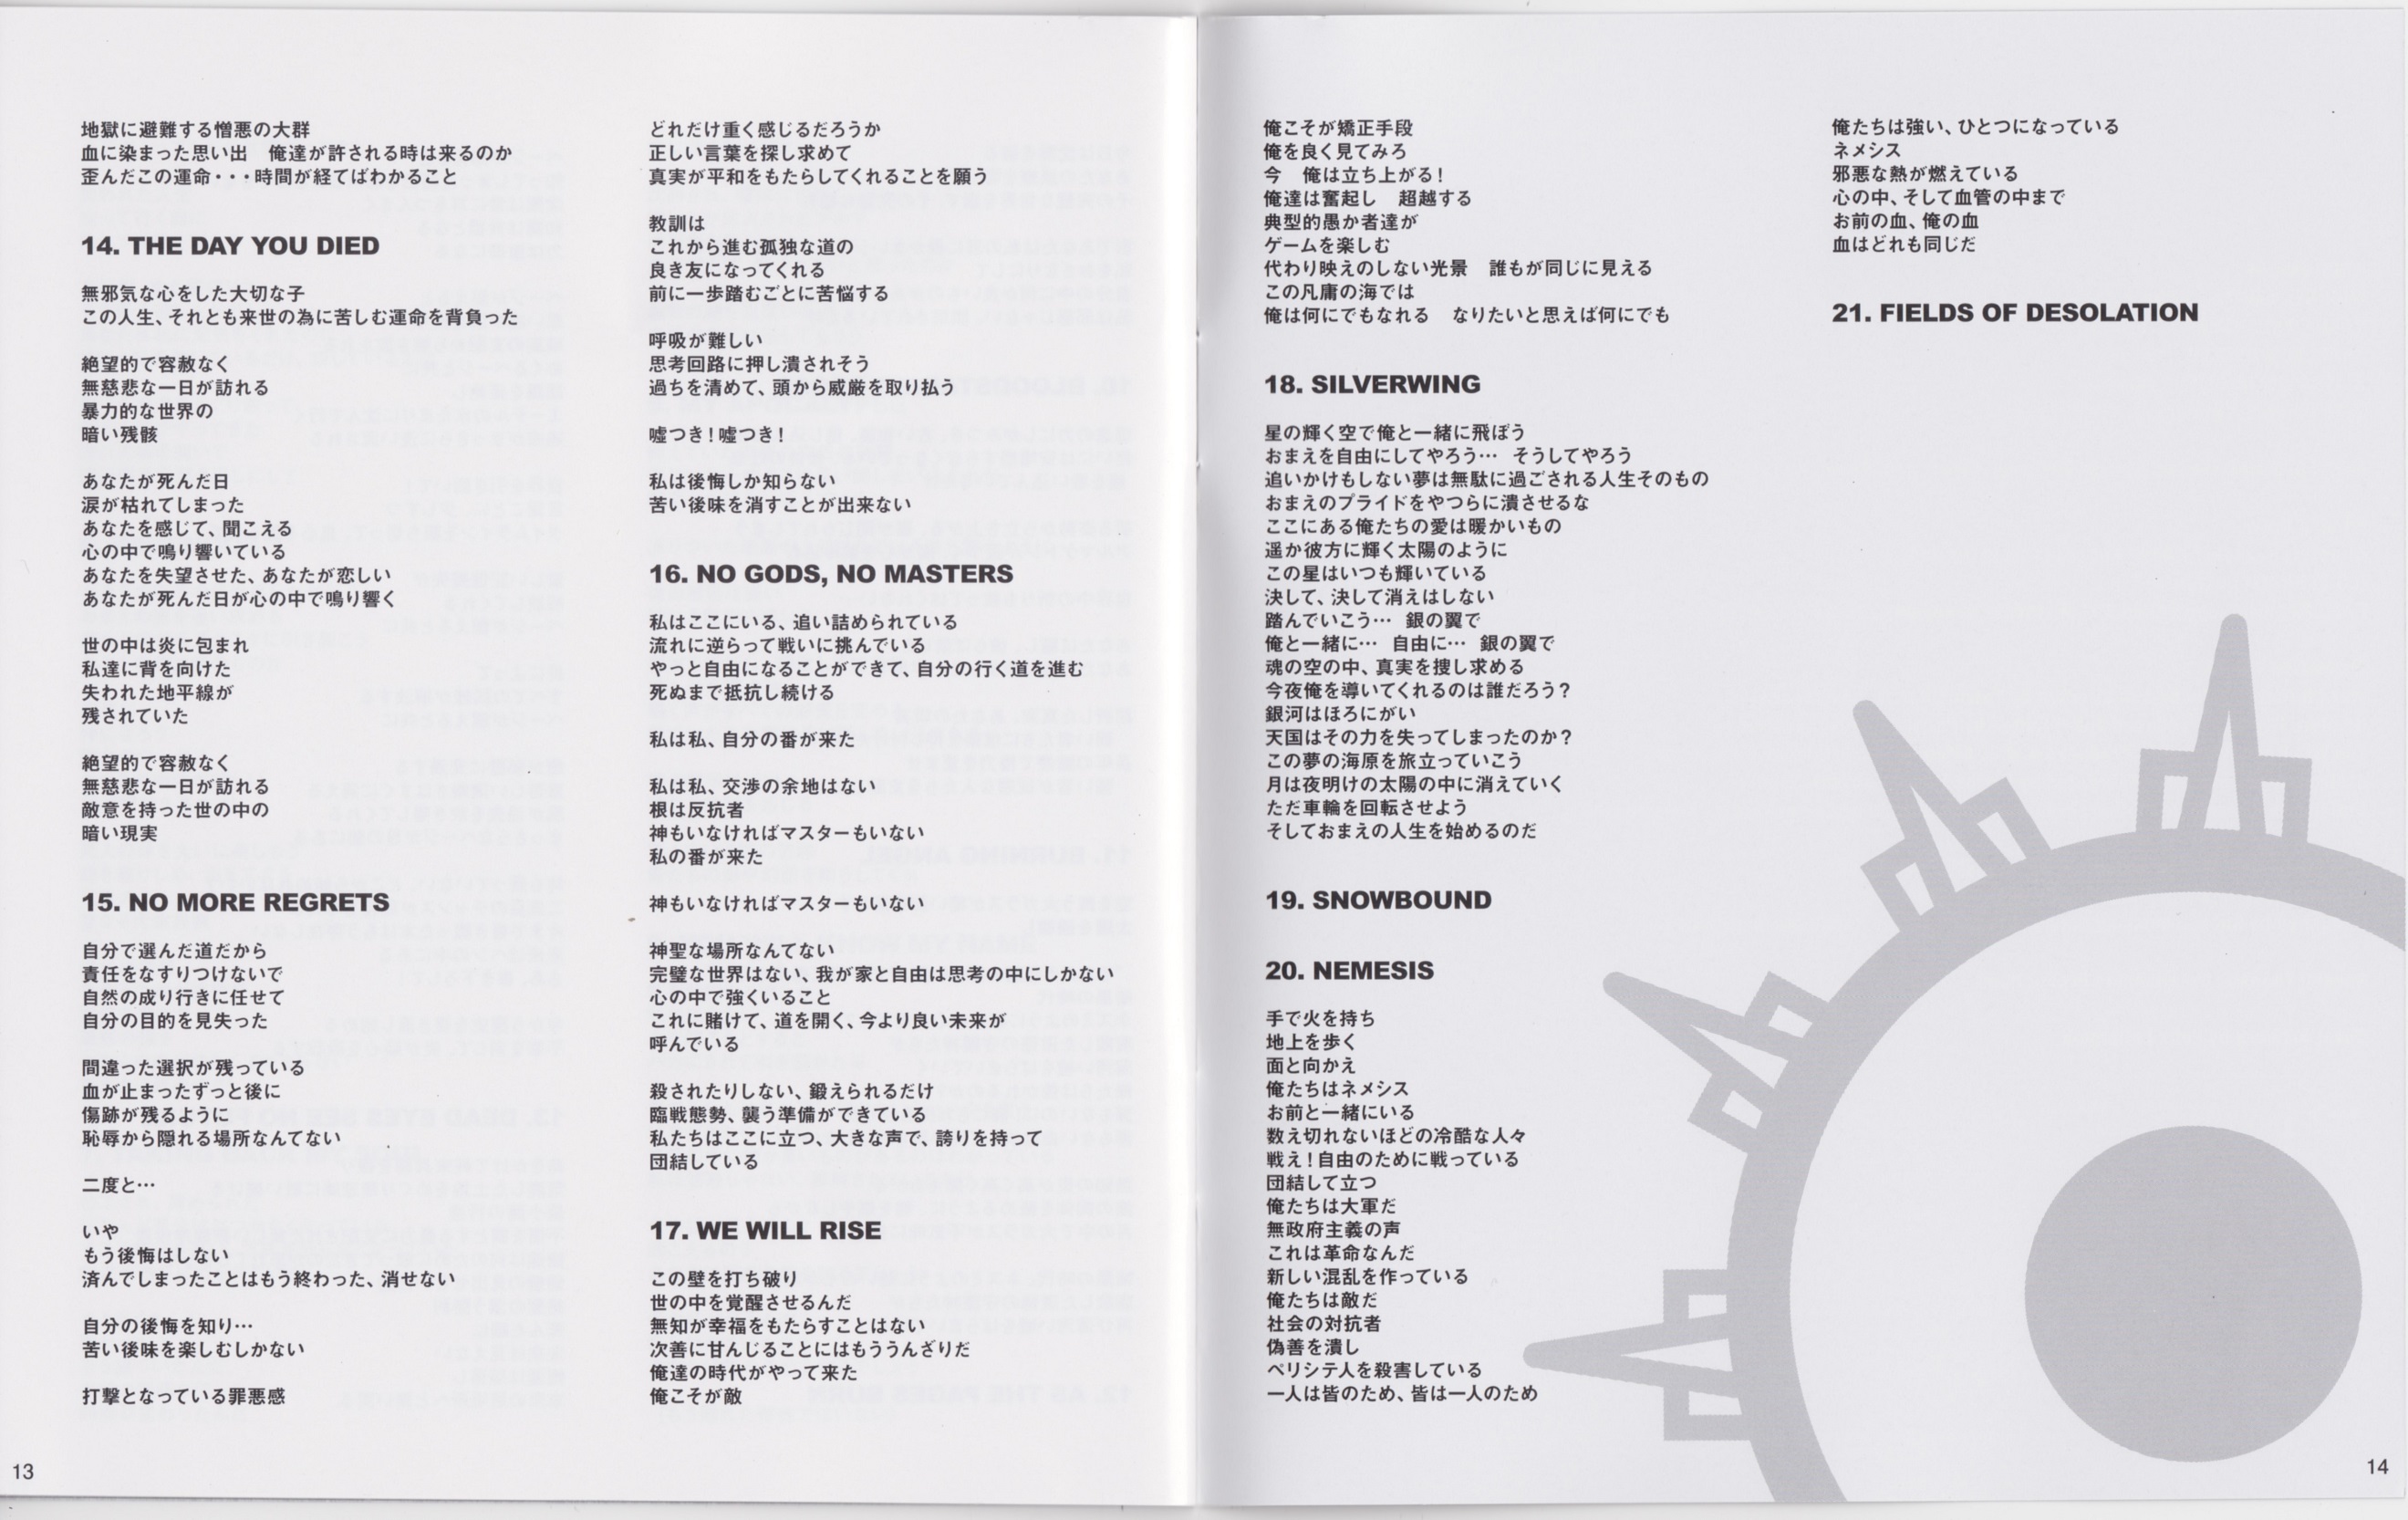 Arch Enemy - War Eternal Tour: Tokyo Sacrifice DVD9